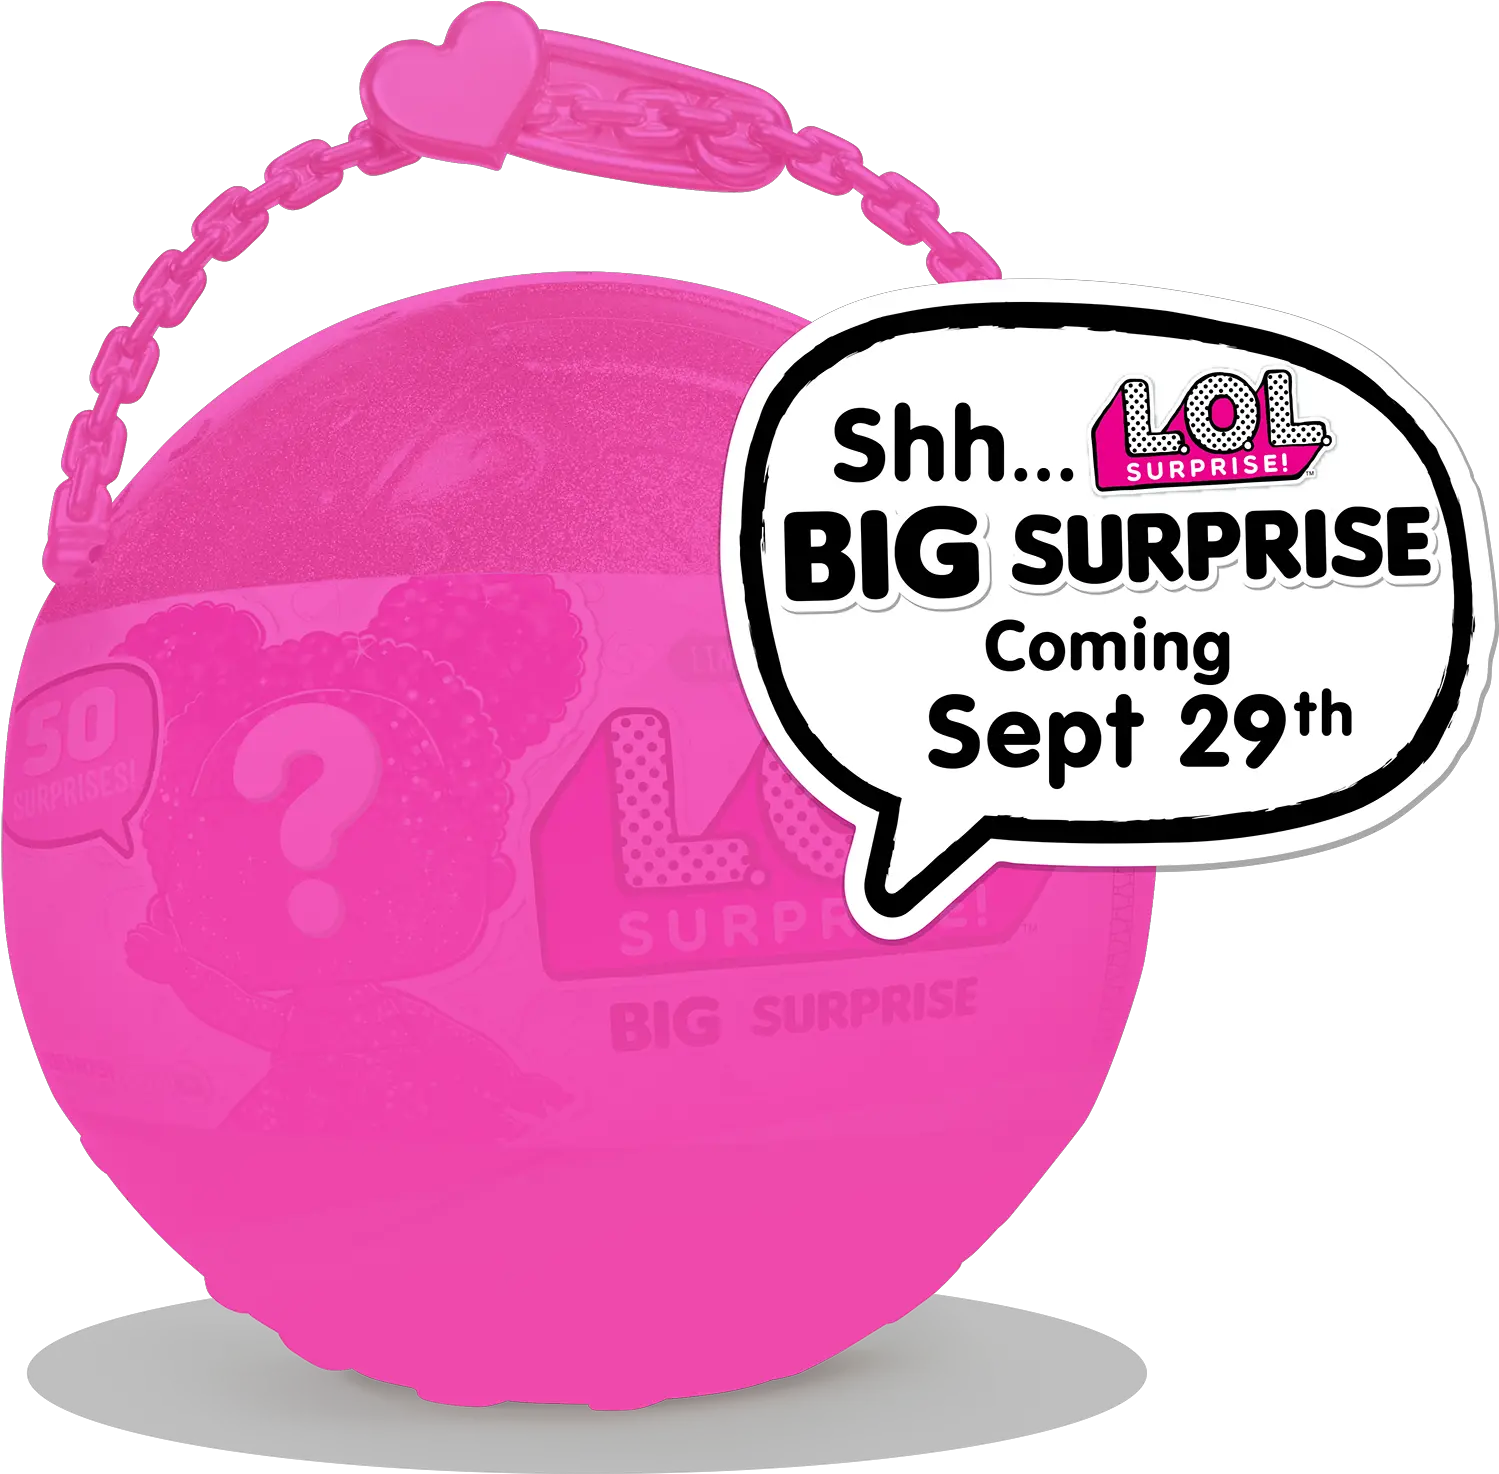 Download Hd L O L Surprise Big Surprise Lol Surprise Lol Surprise Pear Surprise Png Surprise Png